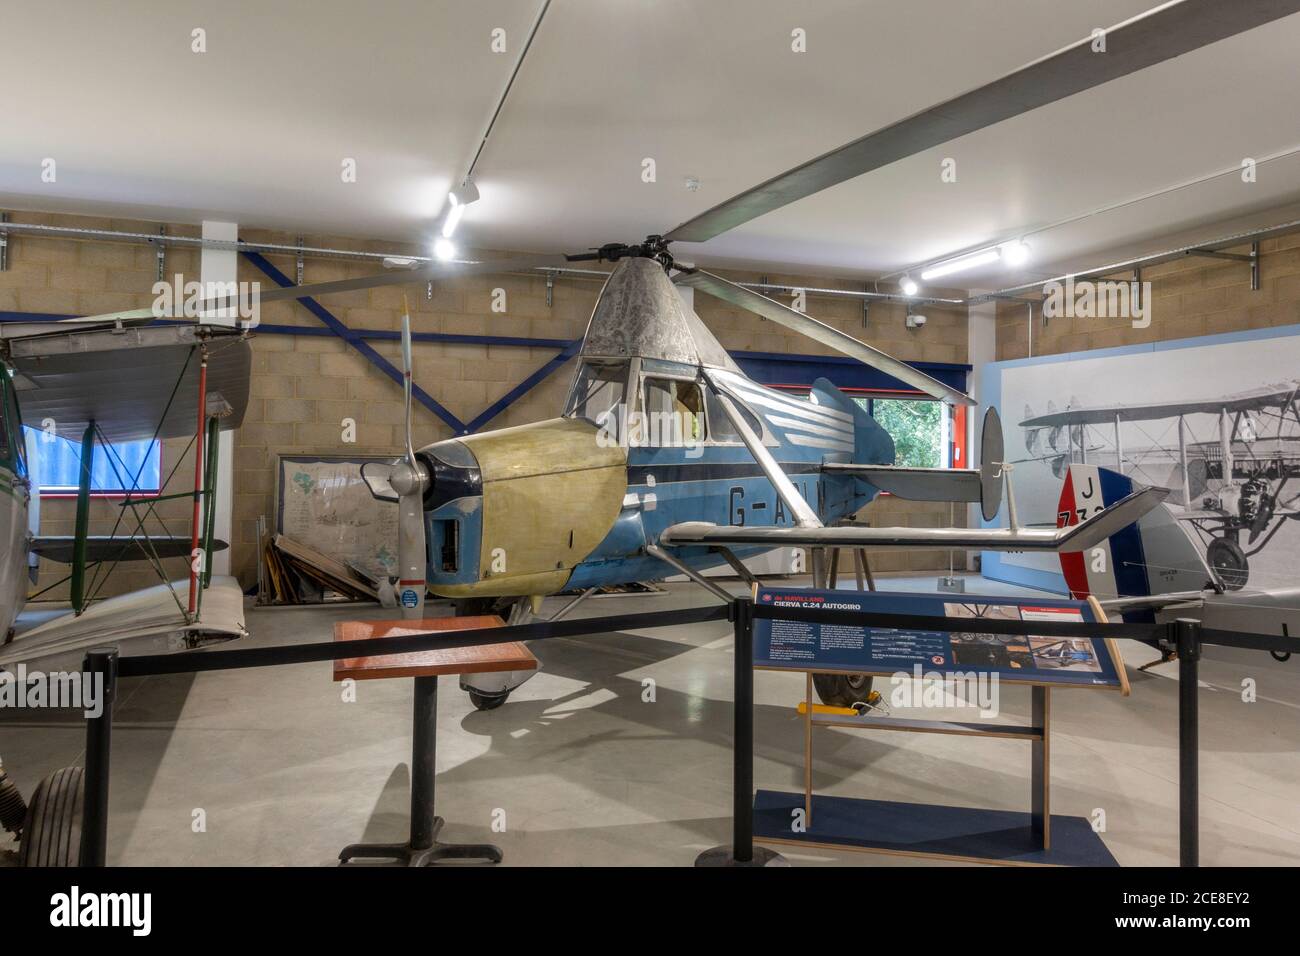 Un avion de havilland Cierva C.24 Autogiro autogyro exposé au musée de Havilland, Londres Colney, Royaume-Uni Banque D'Images